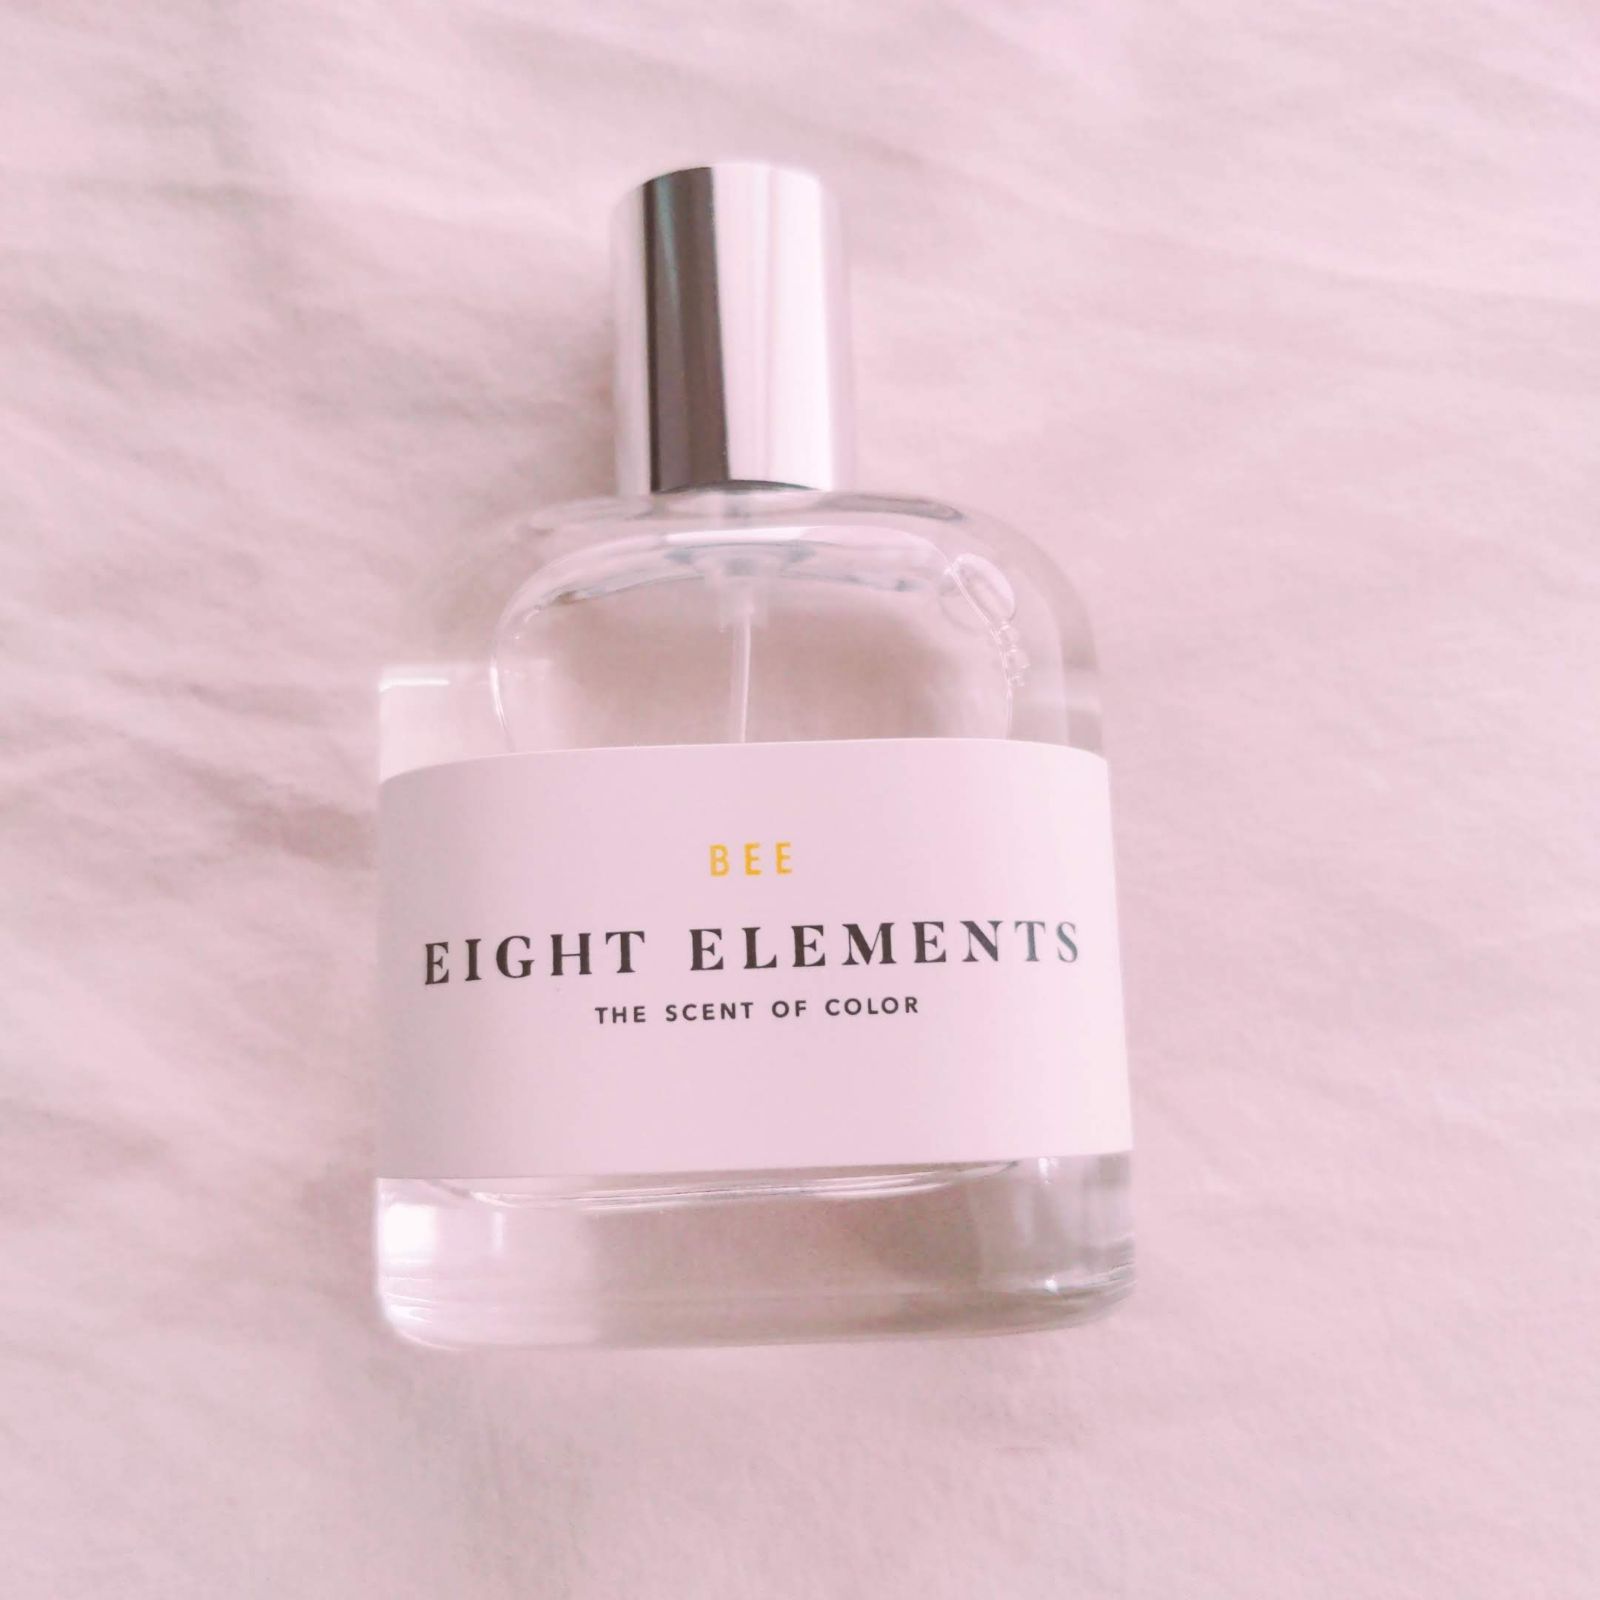 8 エイトエレメンツ ビー / 8 Eight elements BEE【香水】 - メルカリ